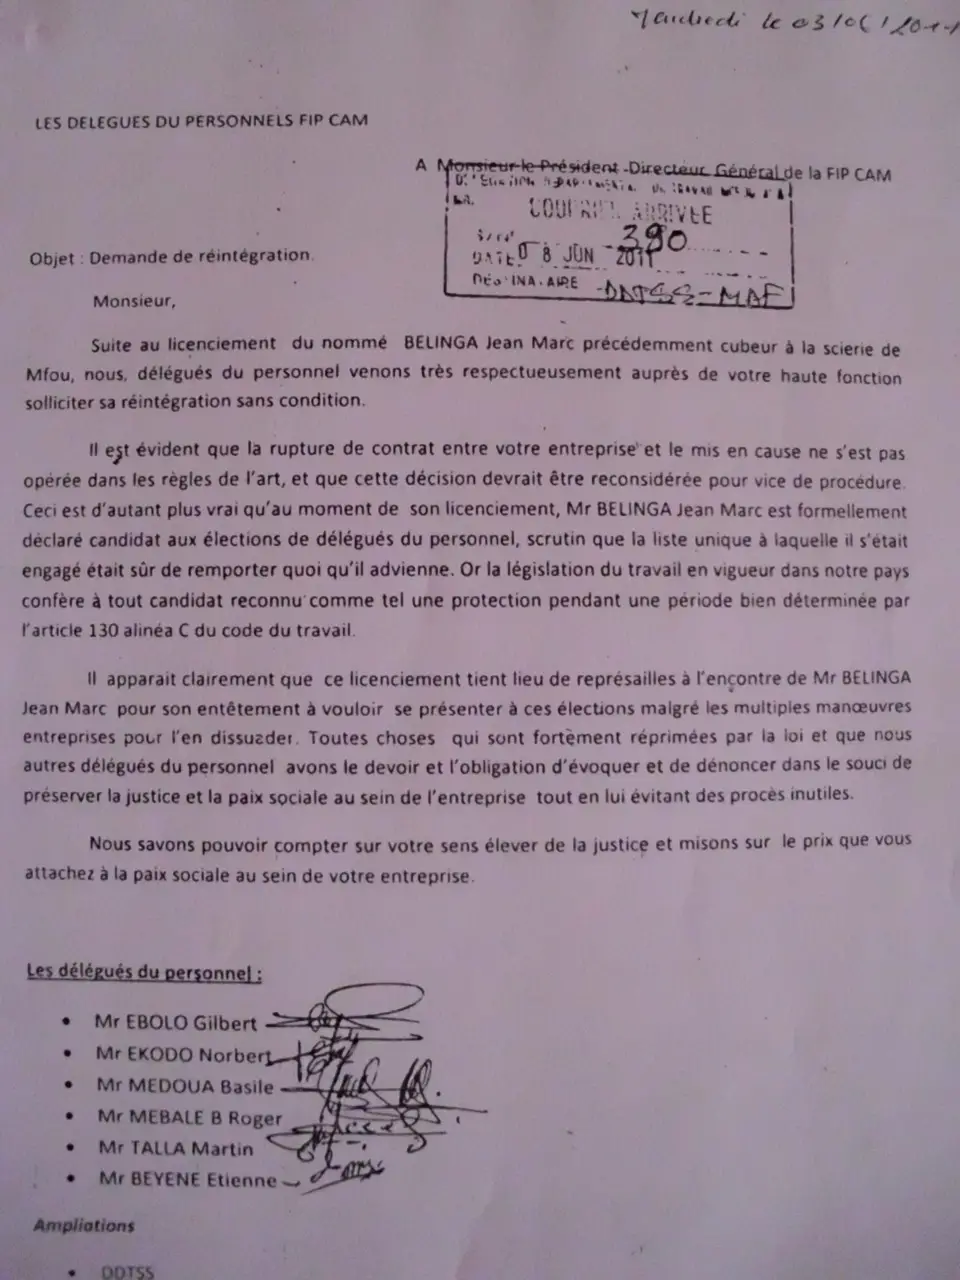 CAMEROUN : FIPCAM, les délégués du personnel s’opposent à la décision du directeur général.